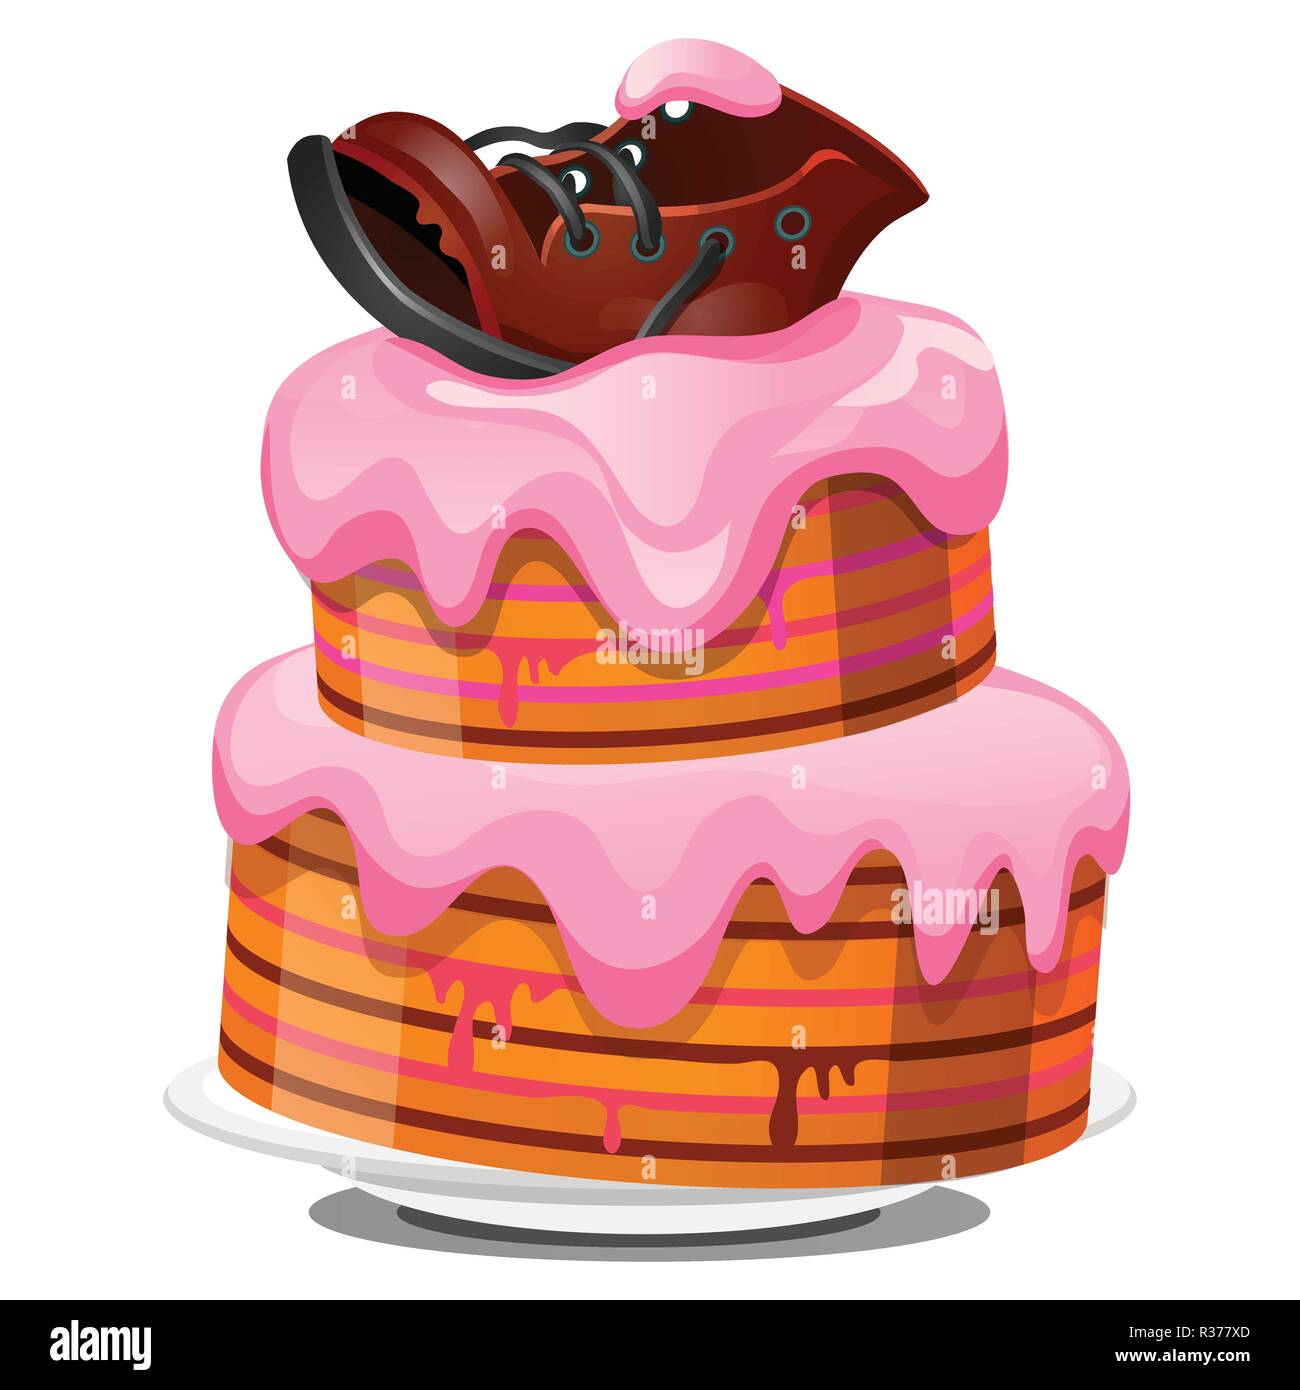 Festliches 2-in-1-Keks Kuchen mit Sahne, zerlumpte alte Leder Stiefel auf weißem Hintergrund. Skizze für Grußkarten, festliche Poster, Party Einladung. Vektor cartoon Close-up Abbildung. Stock Vektor